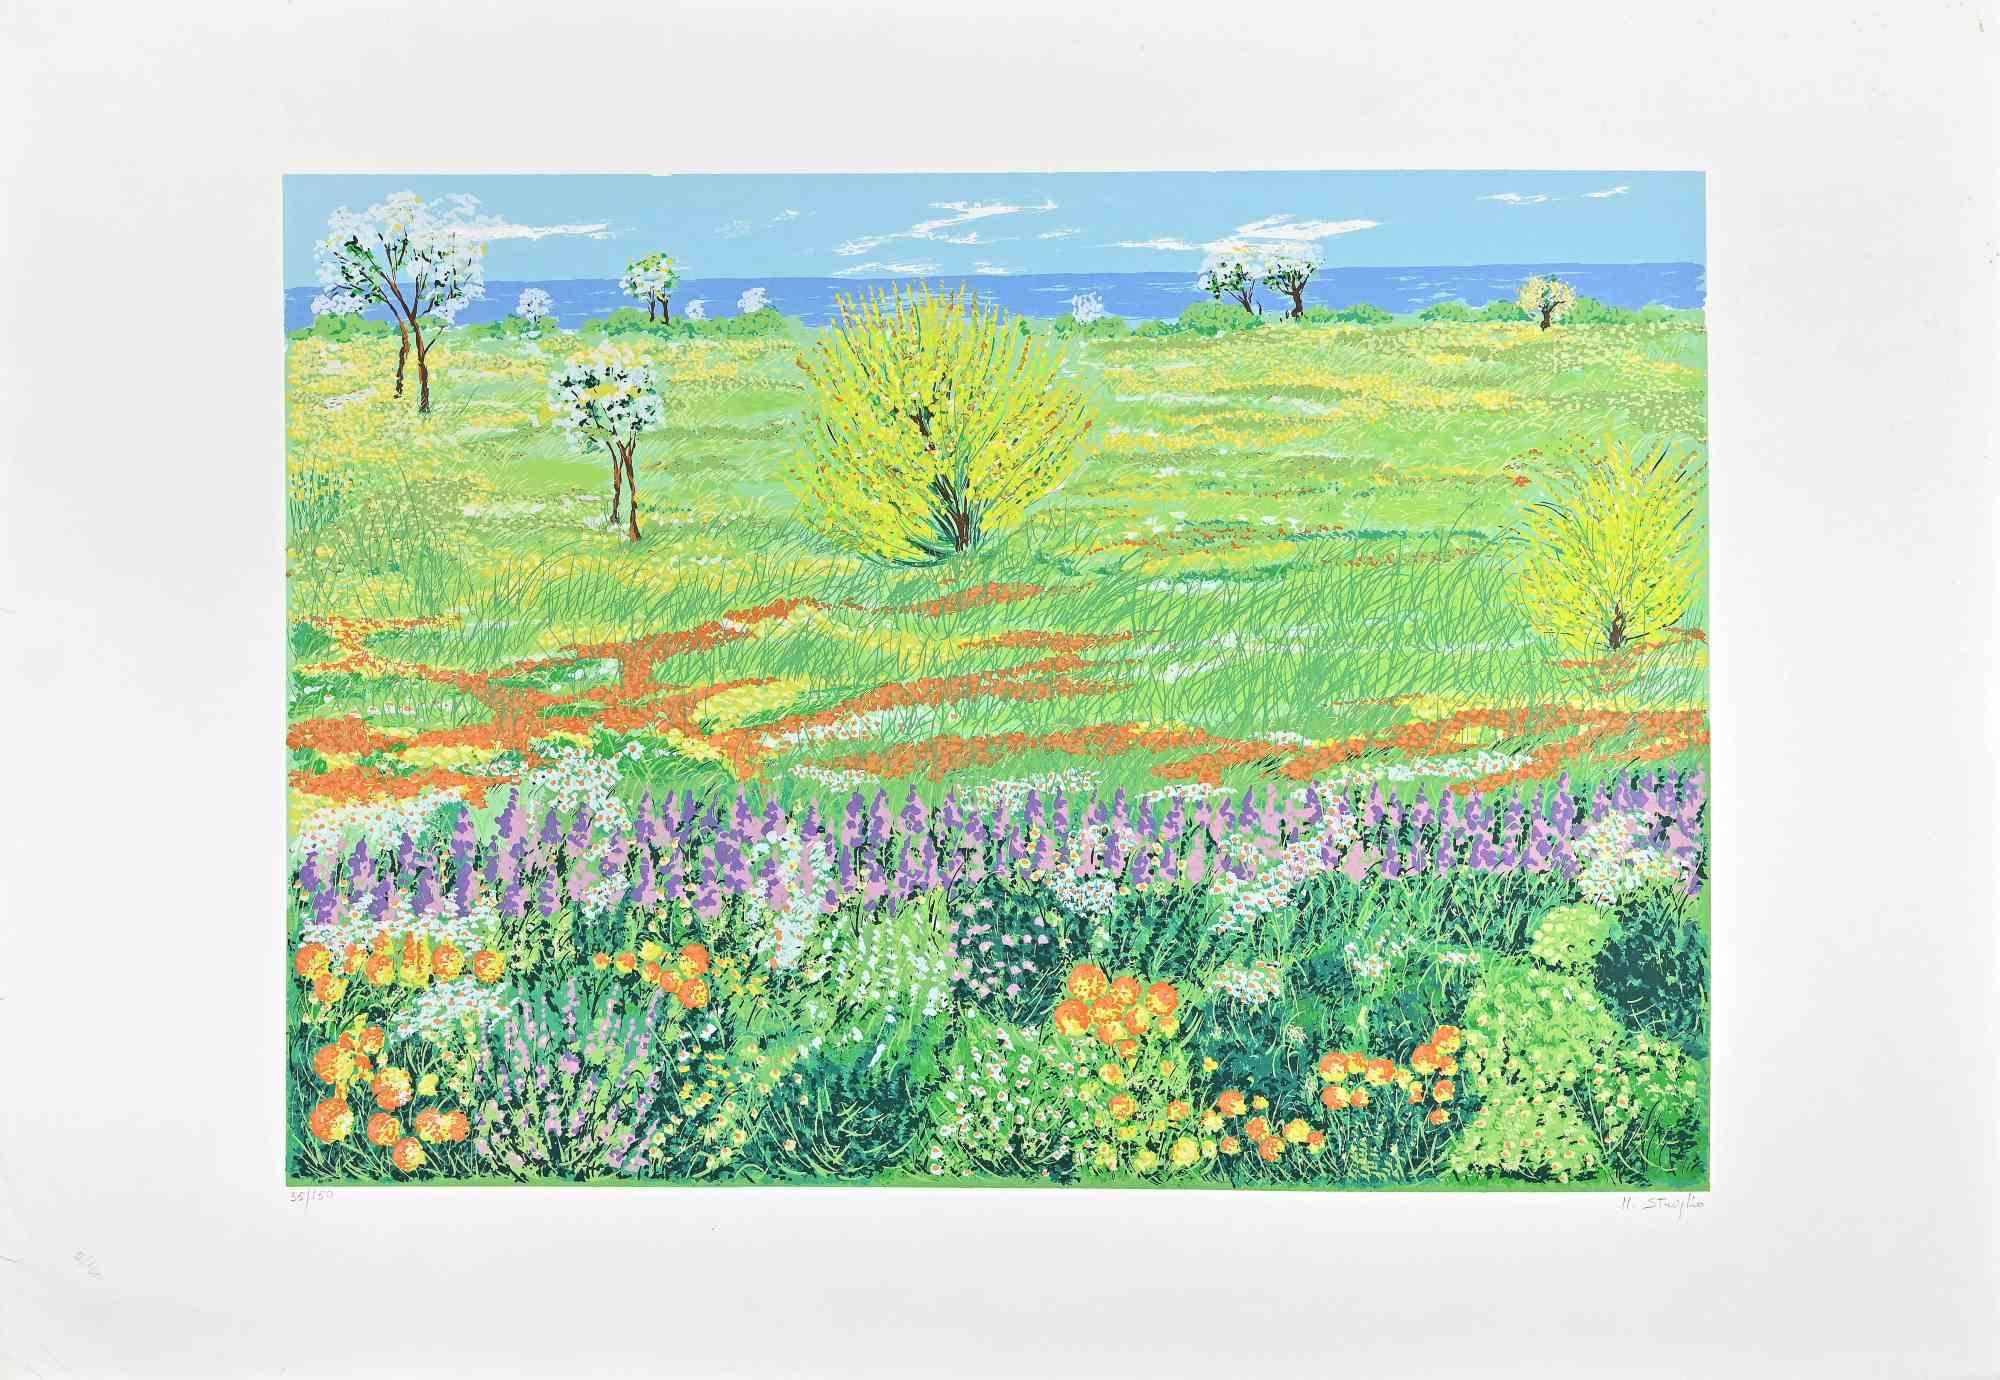 Maddalena Striglio Figurative Print - Meadow in Spring - Original Screen Print by M. Striglio - Late 20th century